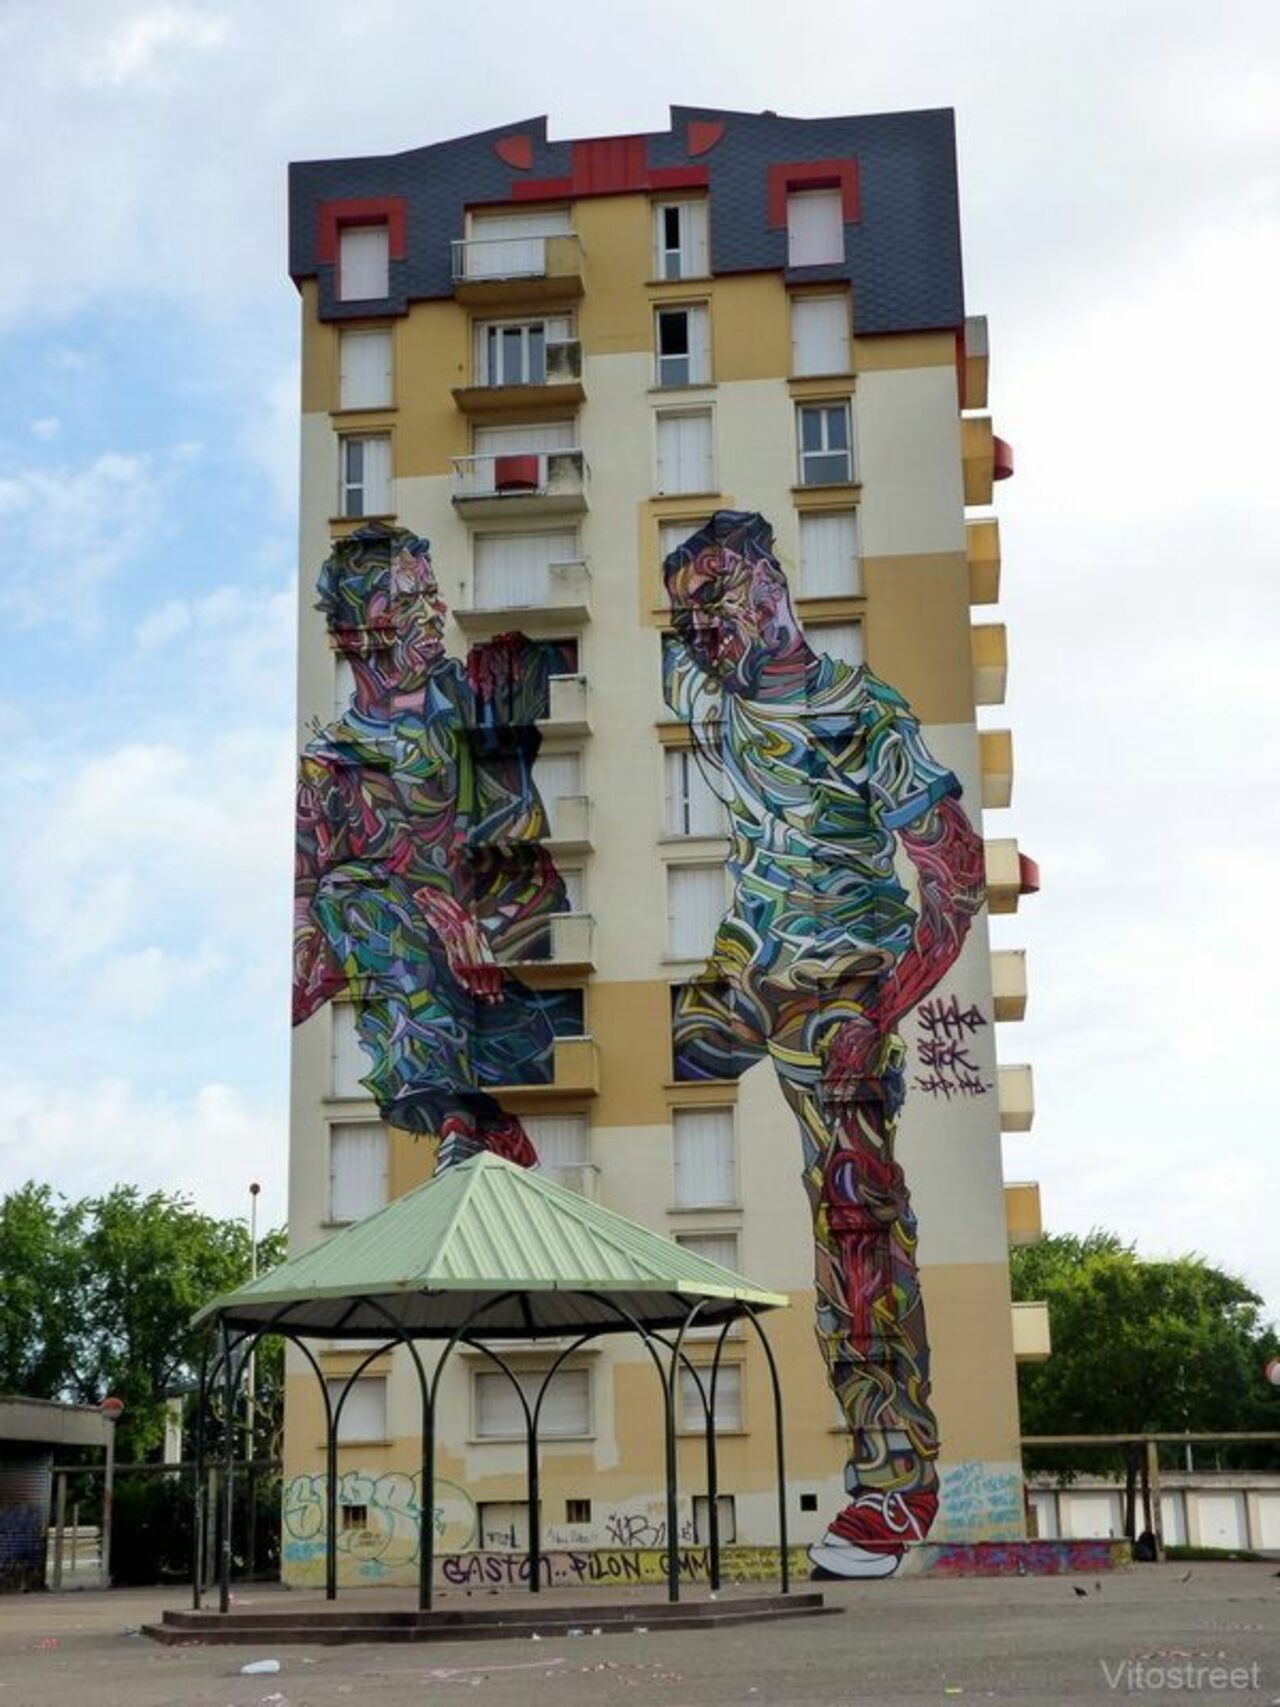 New Work by Shaka #streetart #art #graffiti #mural https://t.co/S7o02E56hA